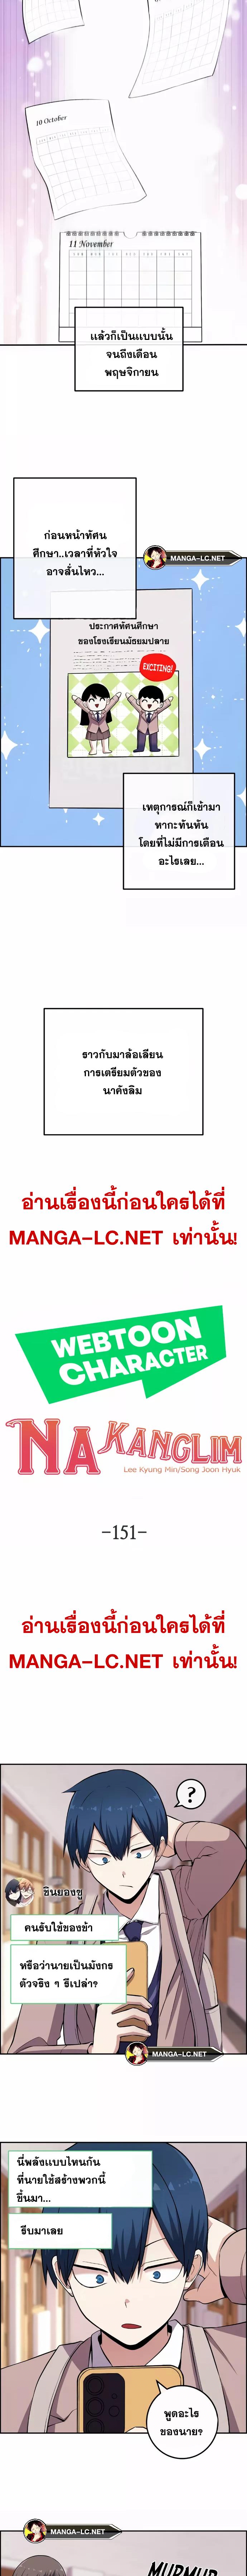 Webtoon Character Na Kang Lim ตอนที่ 151 (5)